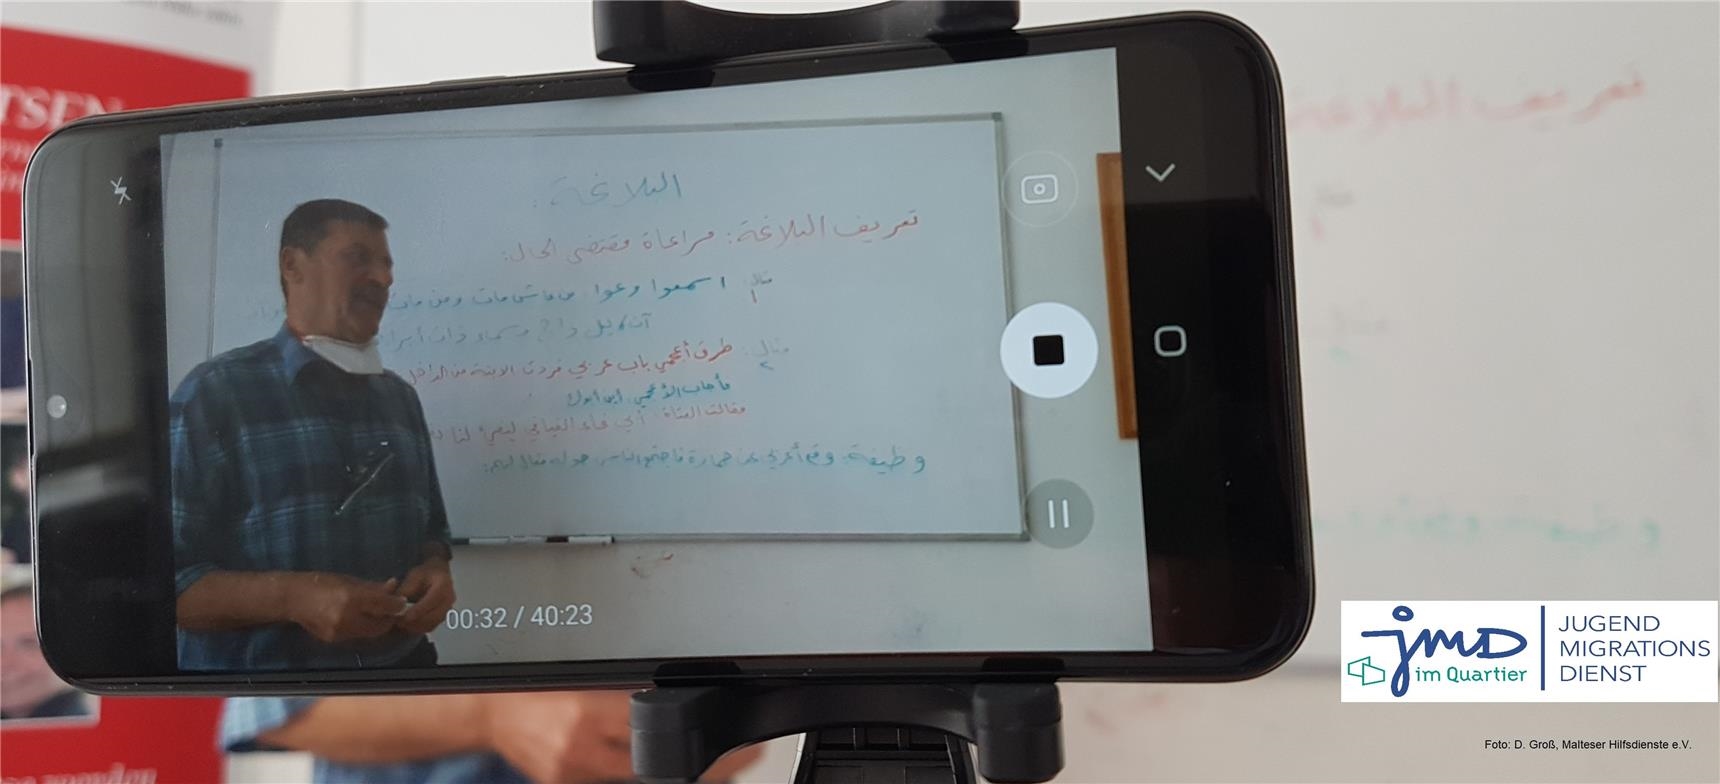 Lehrer wird beim Unterrichten von Handykamera gefilmt